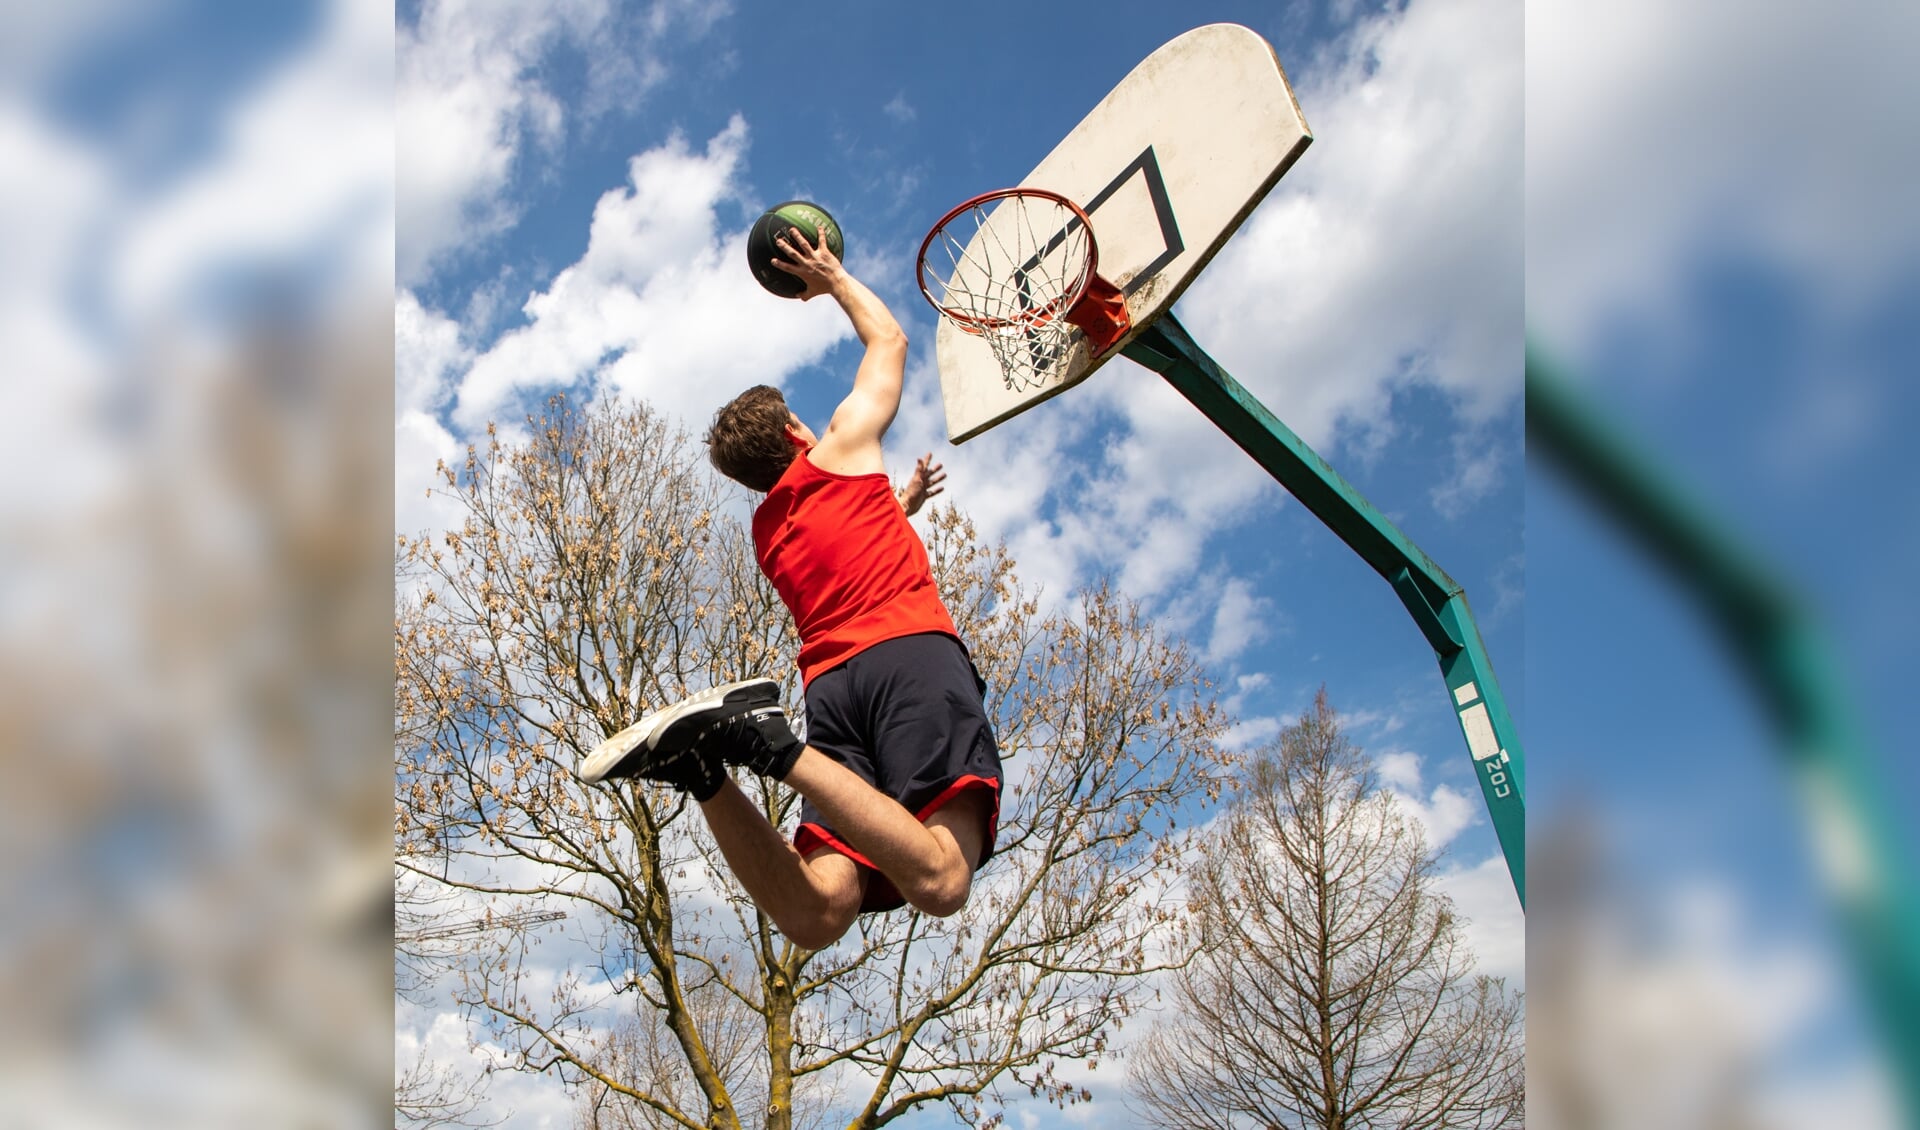 De foto van de basketballer van Robert van Aspert scoort de meeste stemmen bij de lezer.